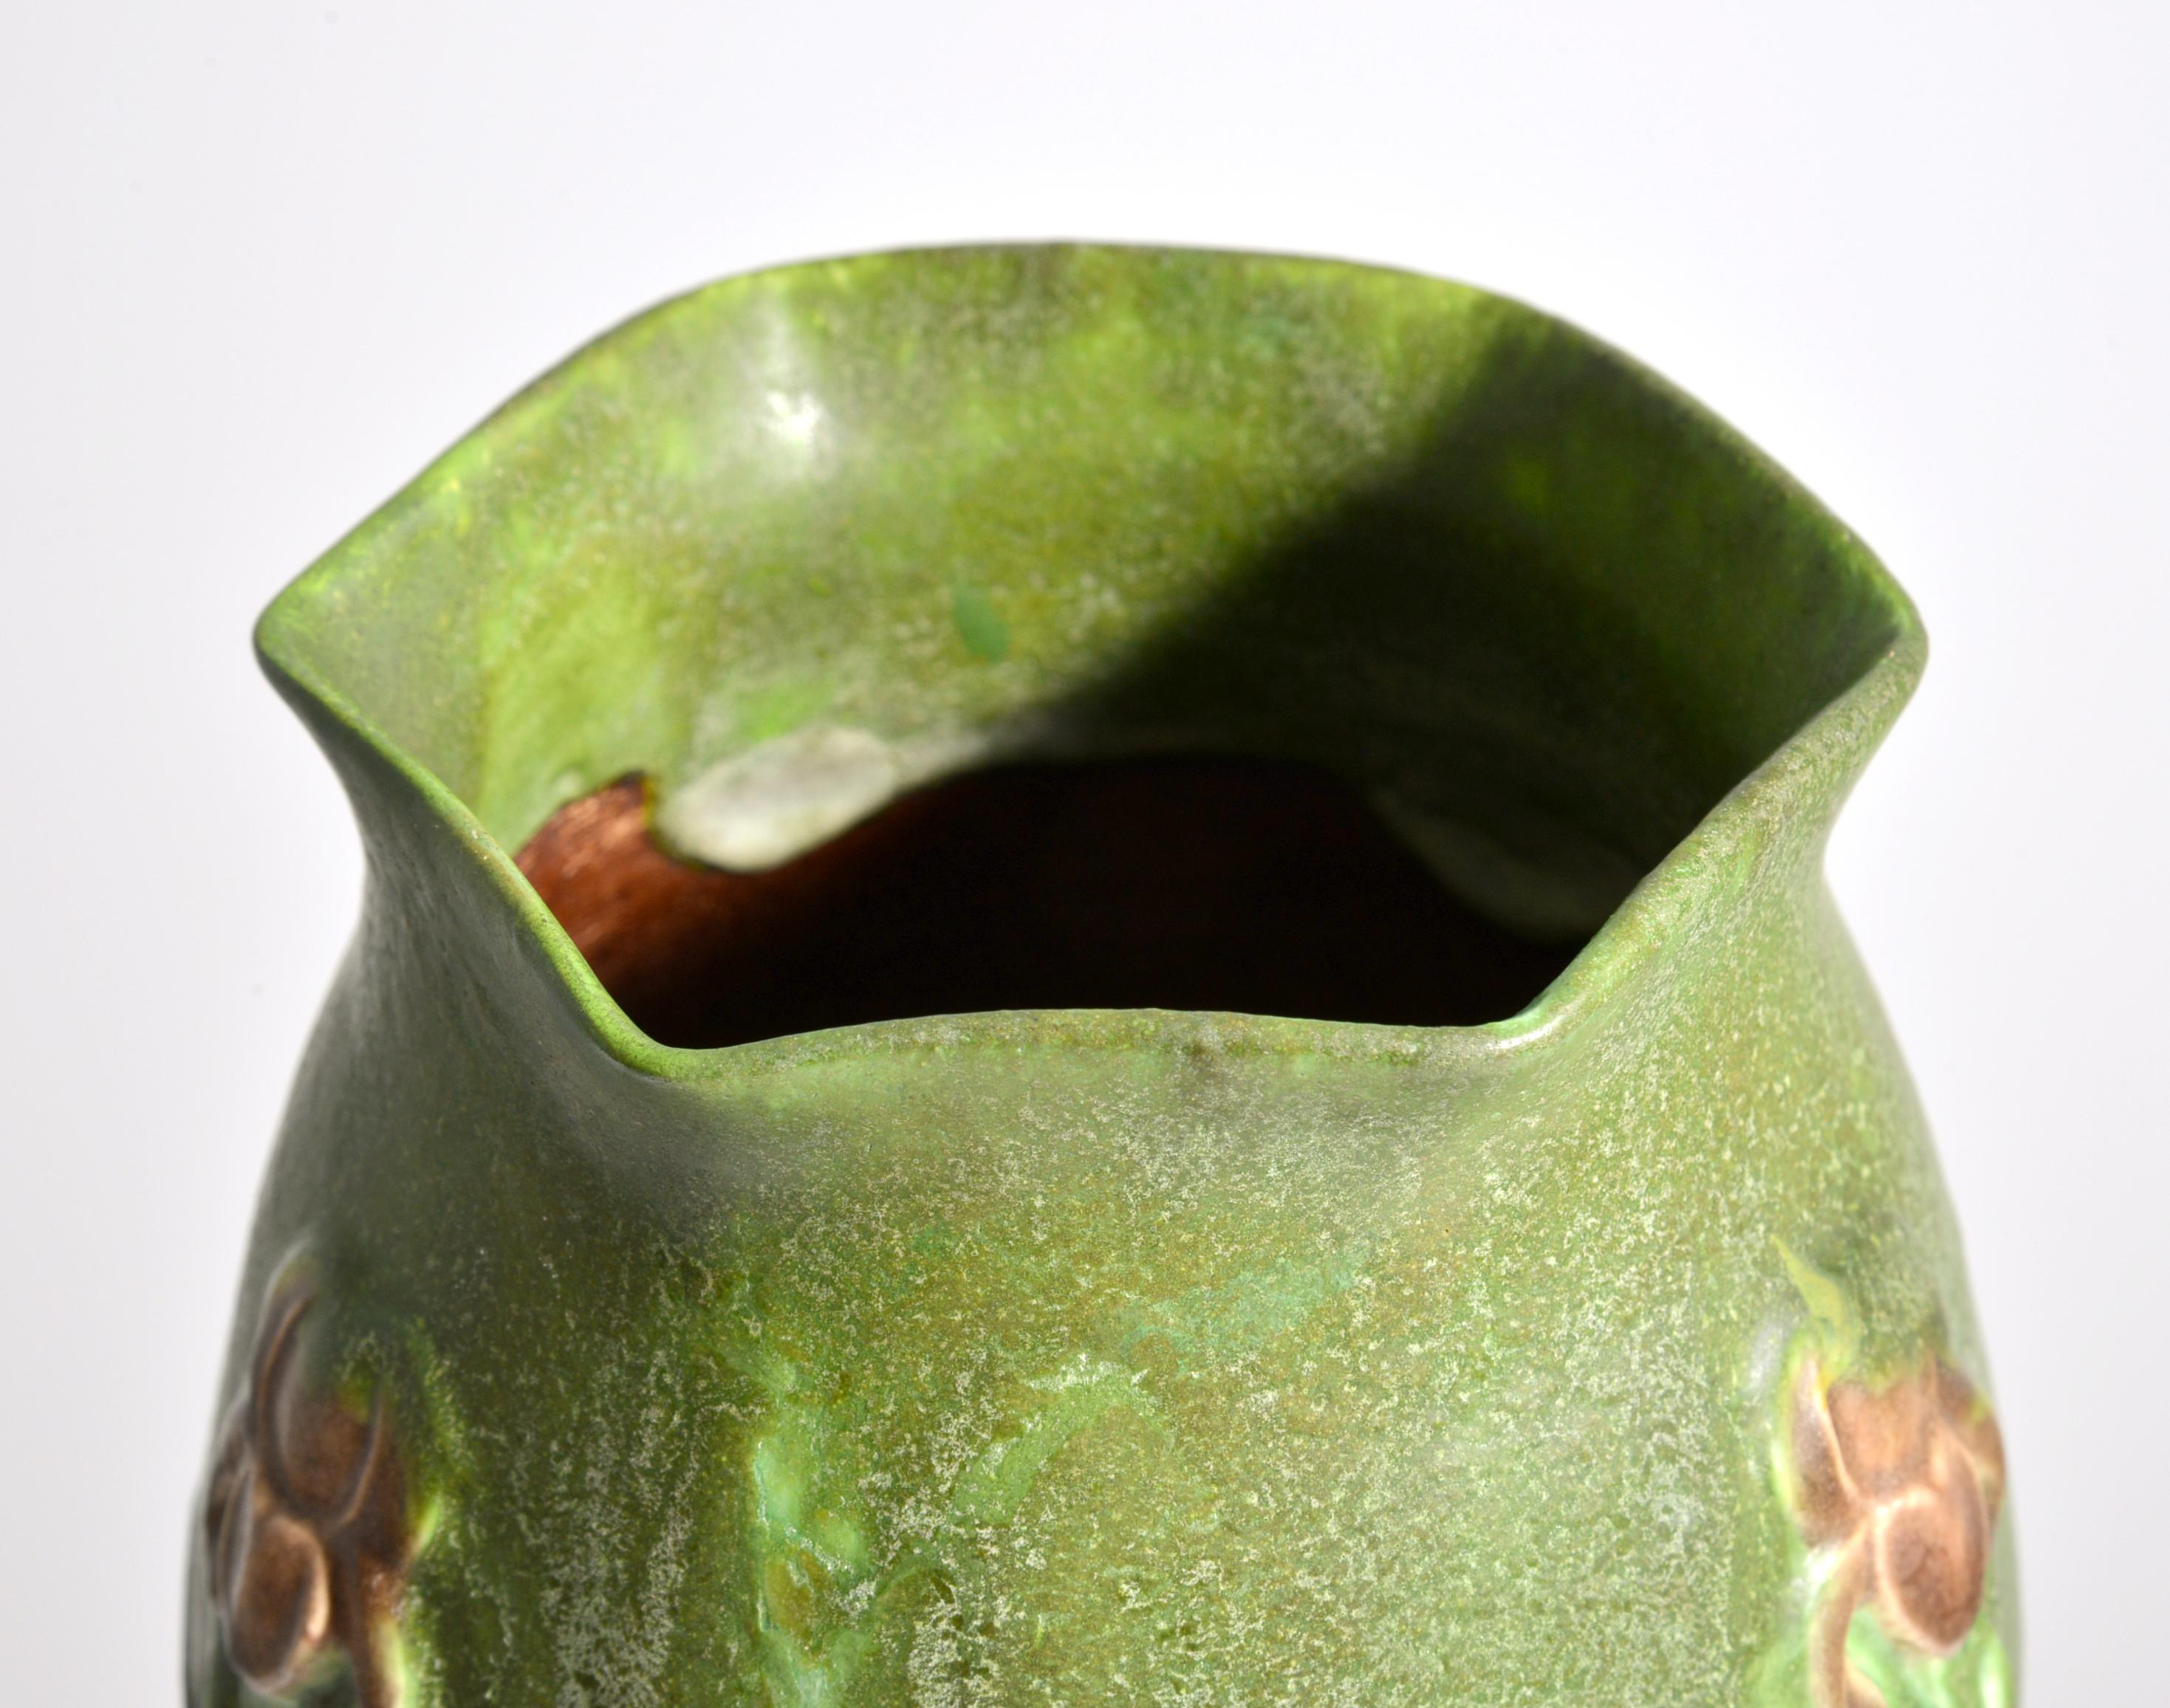 Künstler/Designer: George P. Kendrick (Amerikaner, 1850-1919); Grueby Fayence Co.

Zusätzliche Informationen: Vase ist Modell #147.

Markierung(en); Anmerkungen: signiert, Initialen des Künstlers, 147

Herkunftsland; MATERIALIEN: USA; glasiertes